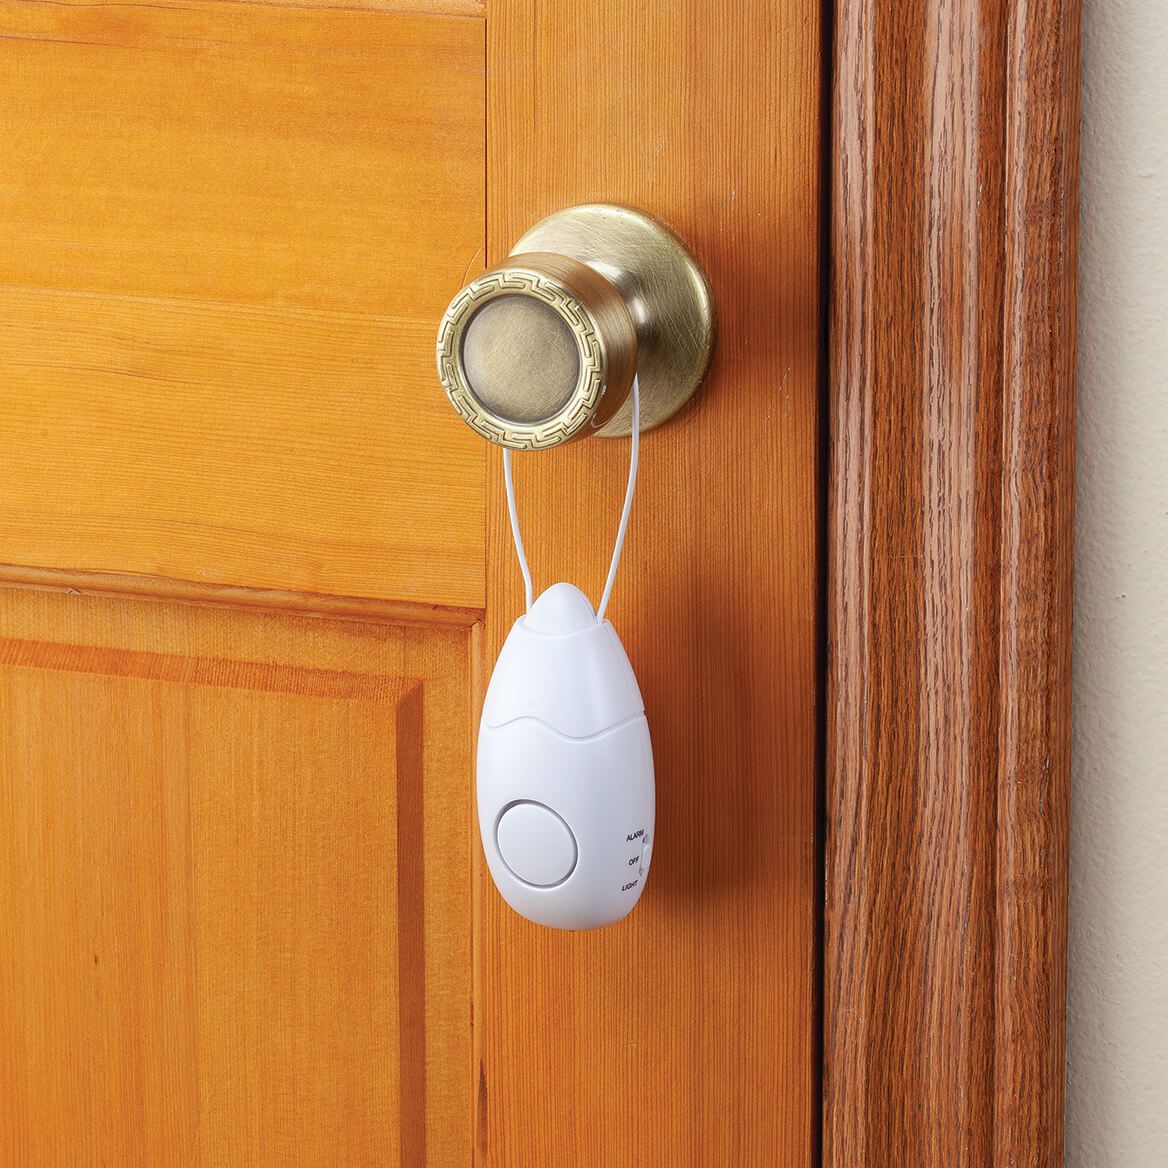 Hanging Door Handle Alarm + '-' + 375604